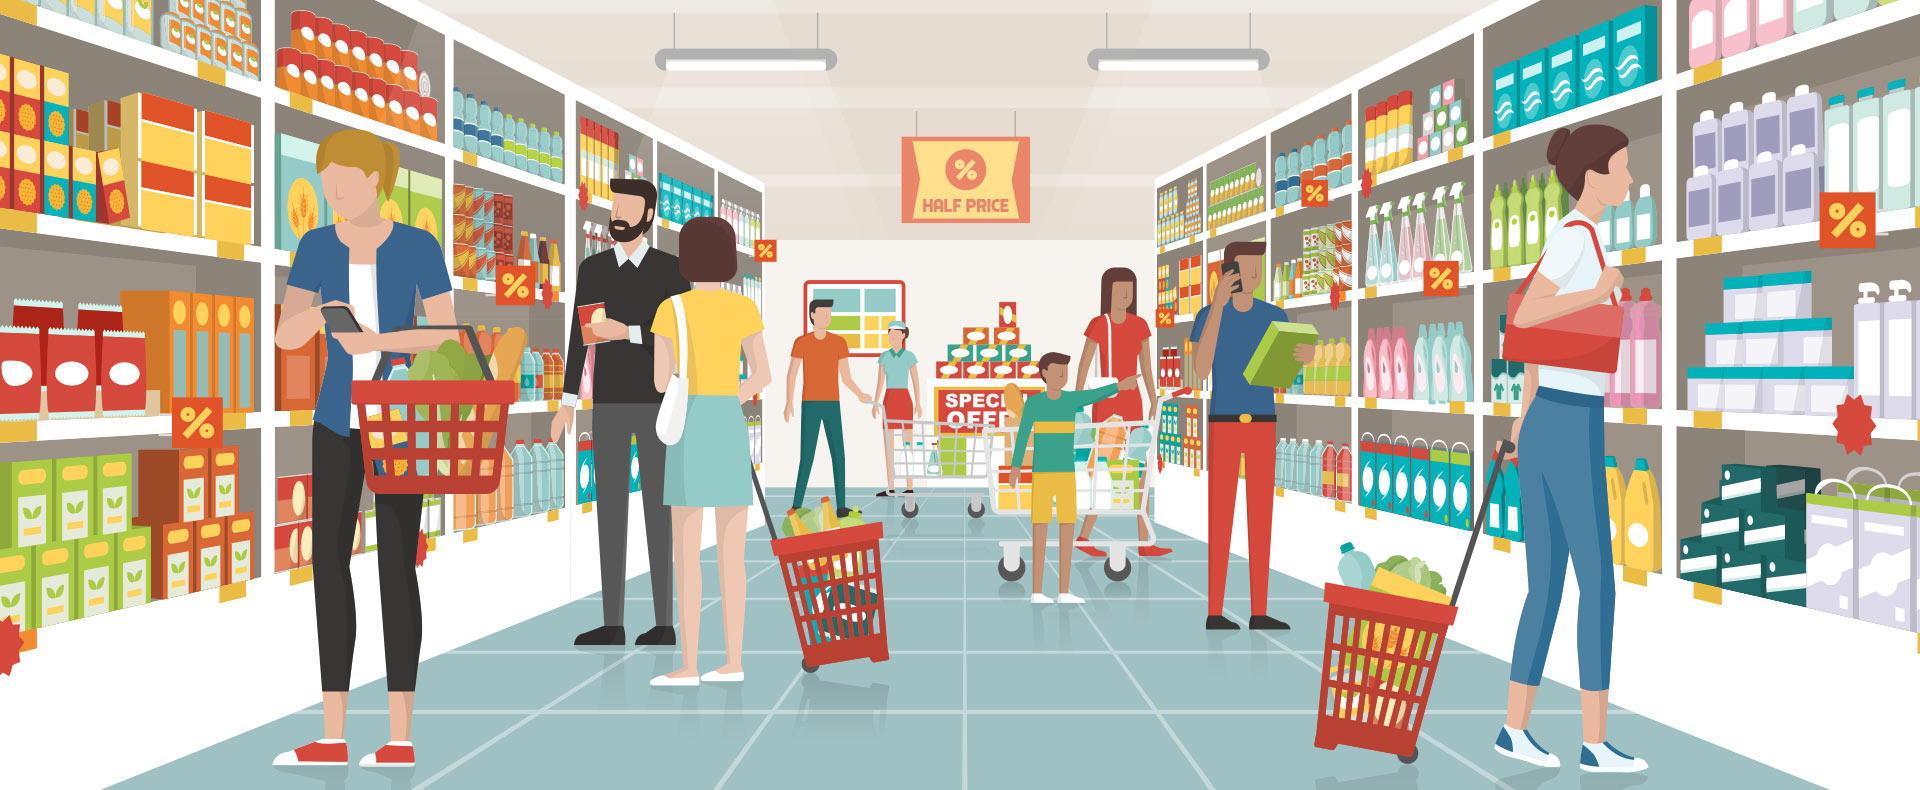 Ilustración de personas en un supermercado